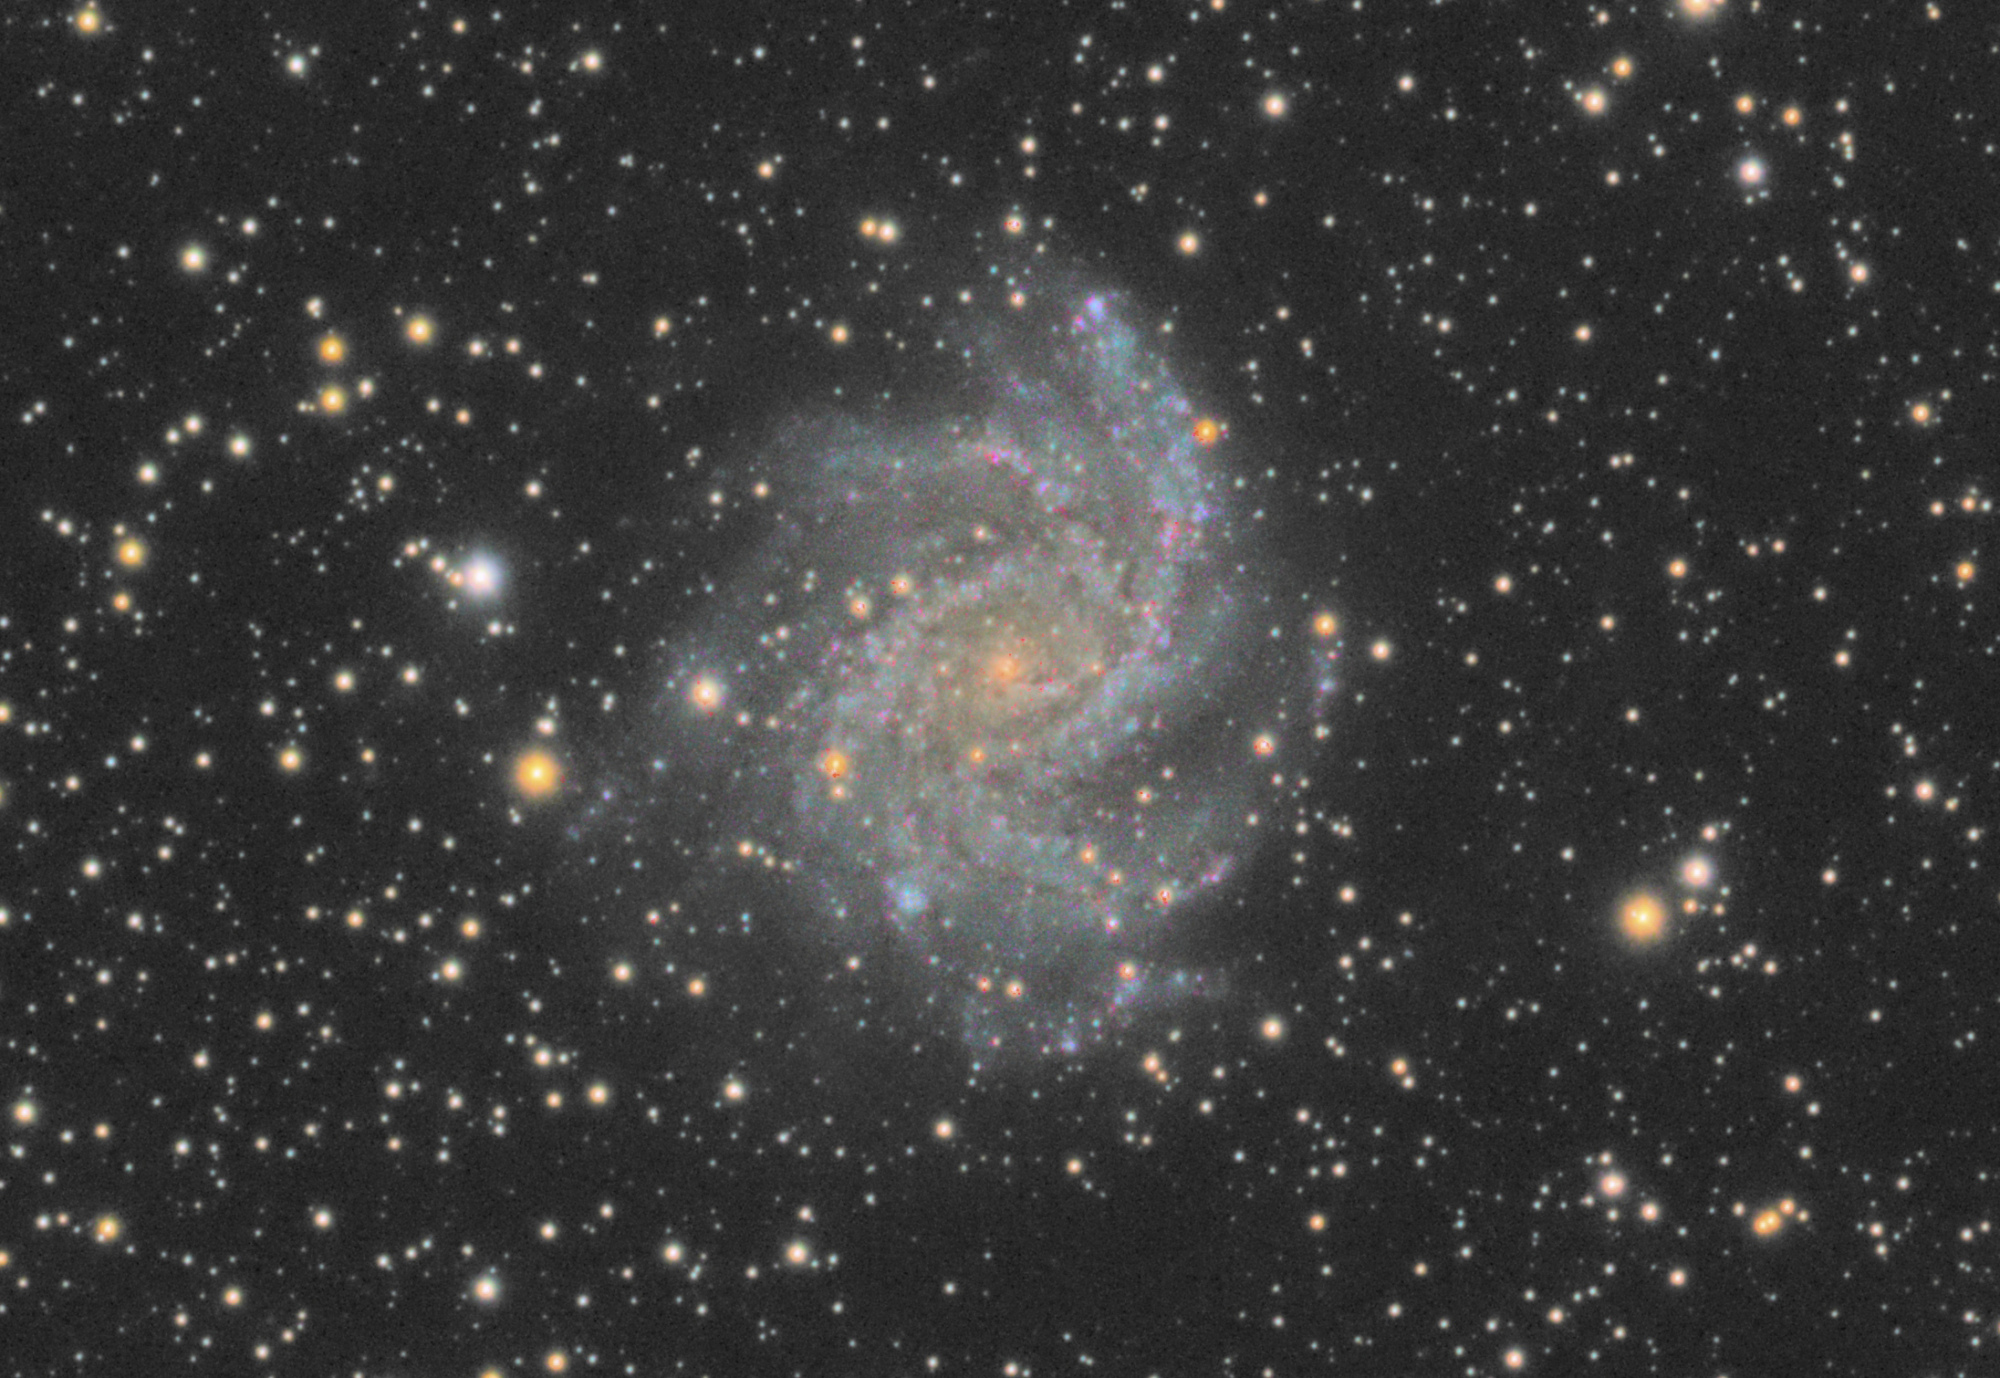 60c53659ee4de_NGC6946Crop.thumb.jpg.f55339795860f9a54d8943113f360b33.jpg